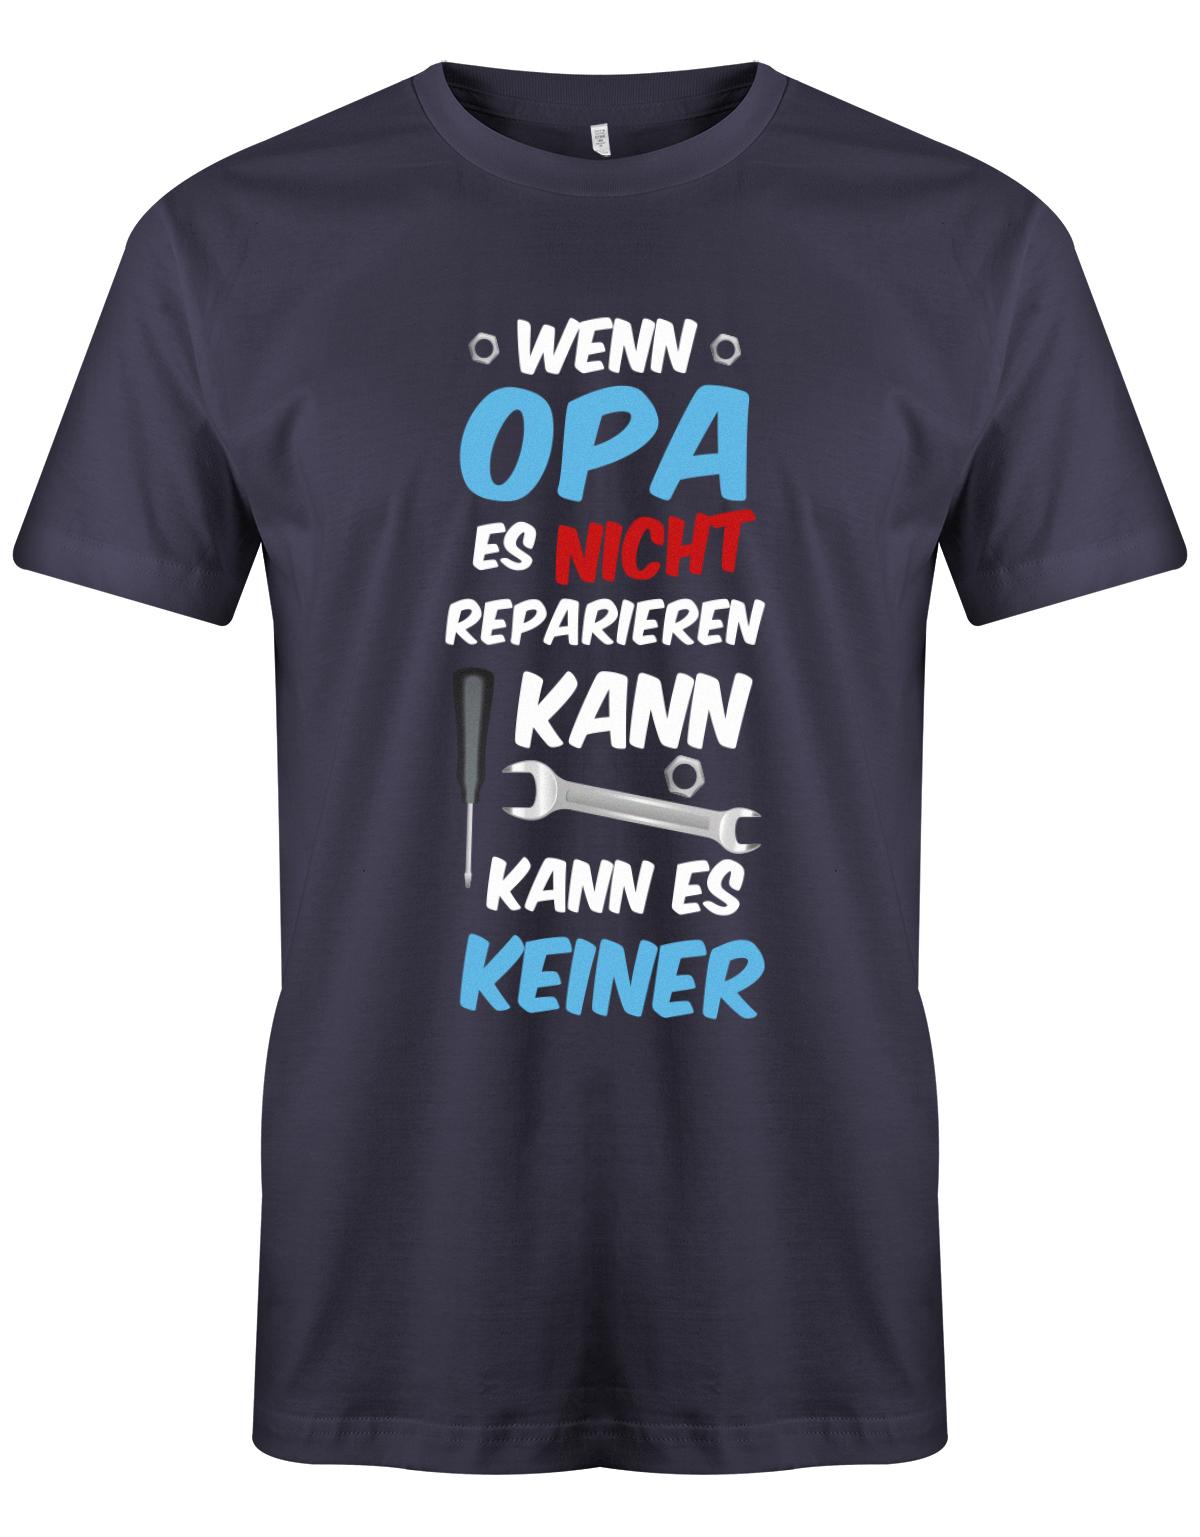 Opa T-Shirt – Wenn Opa es nicht reparieren kann, kann es keiner. Navy